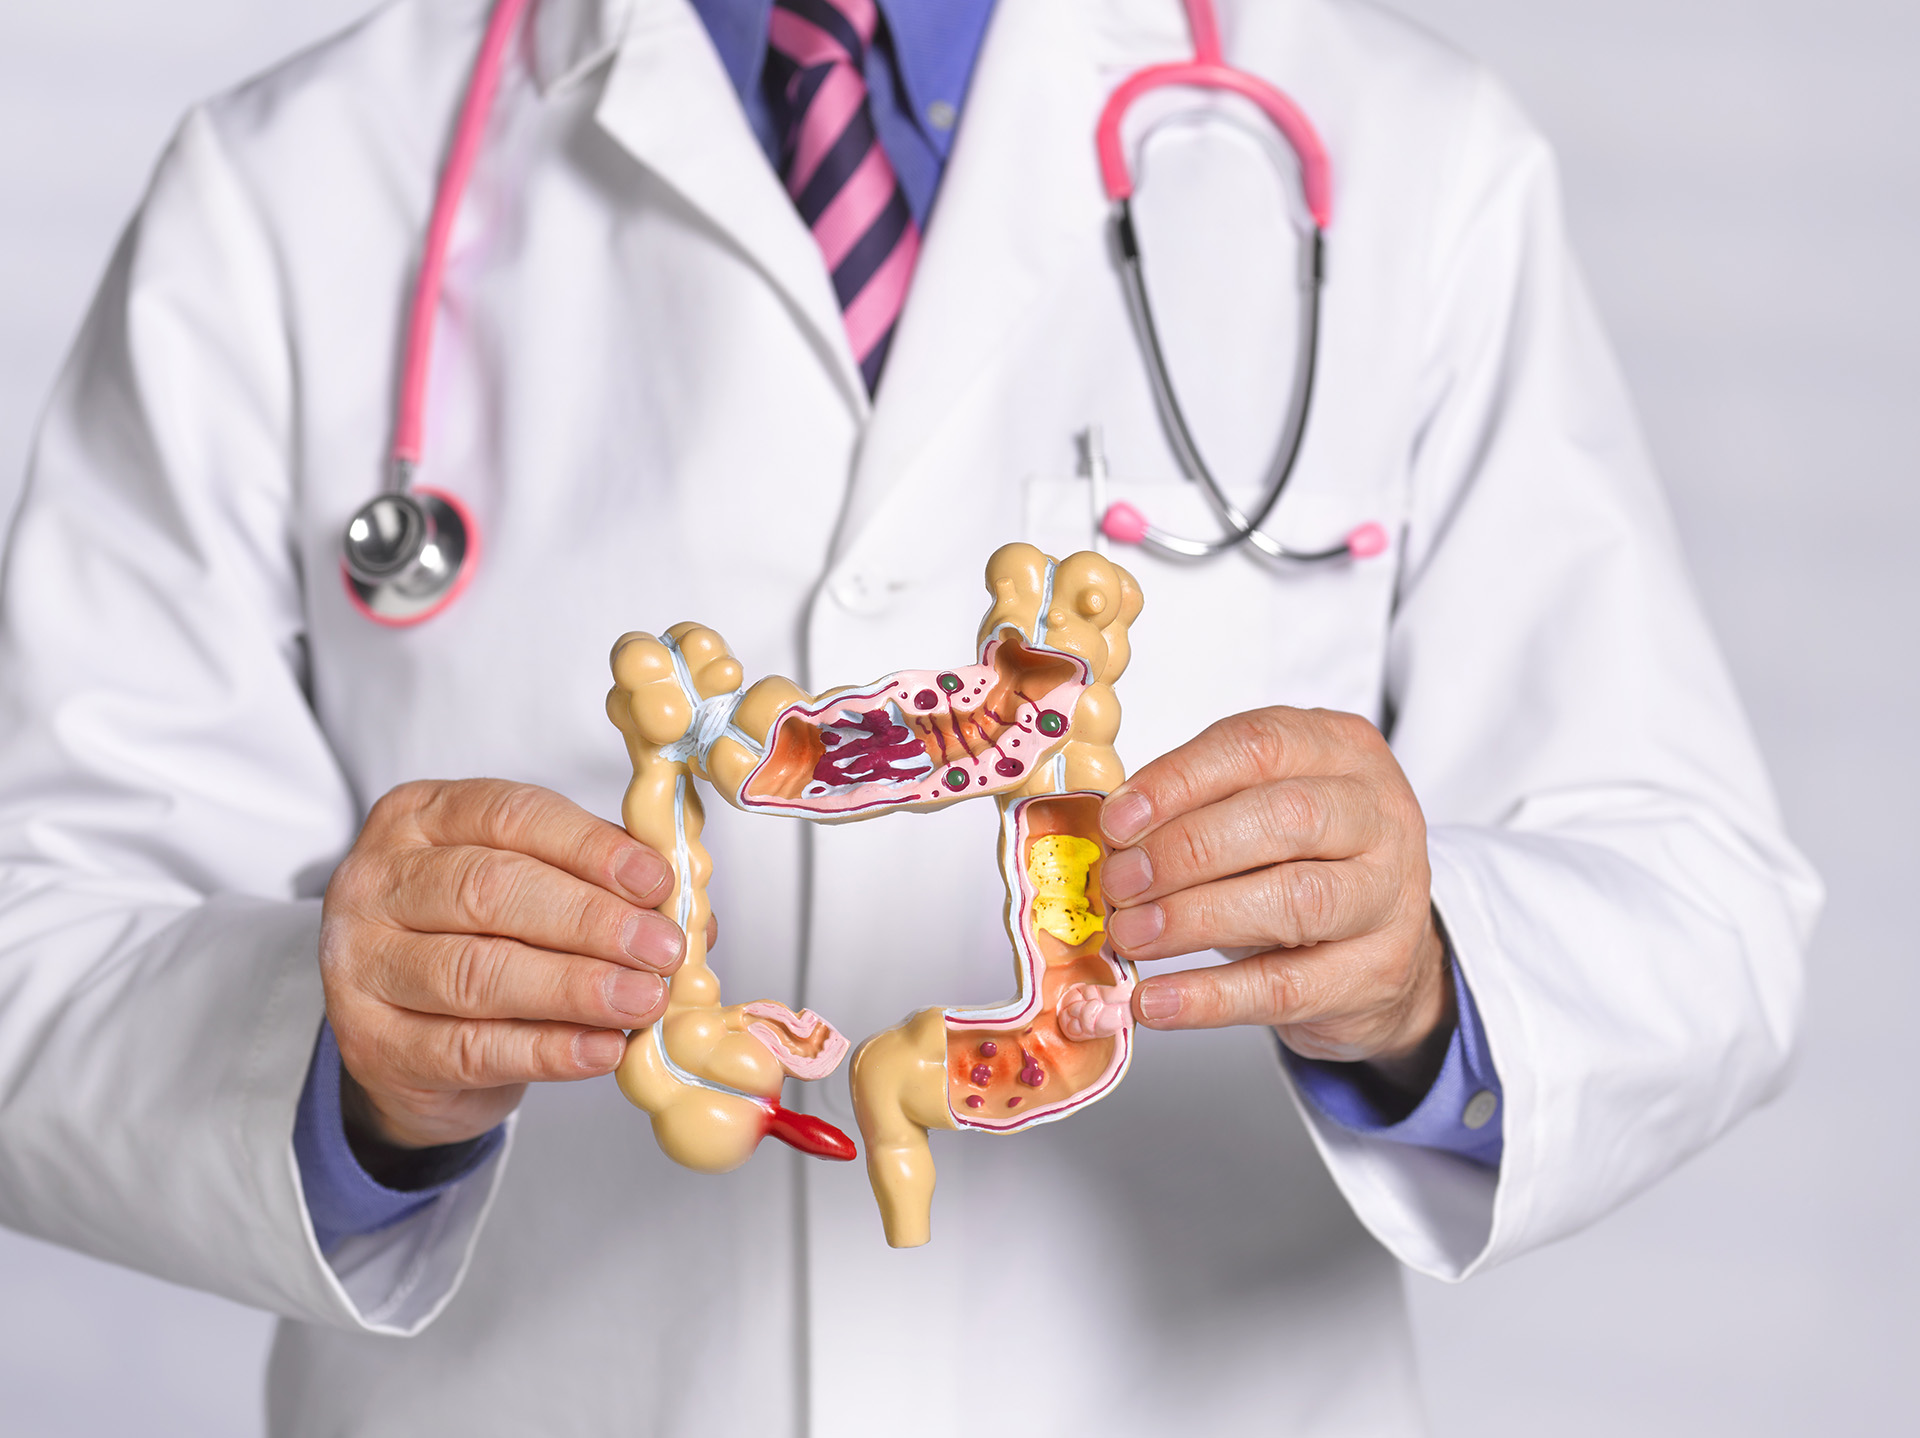 El cáncer de colon provoca unas 20 muertes por día, la mayoría de las cuales podría prevenirse (Getty Images)